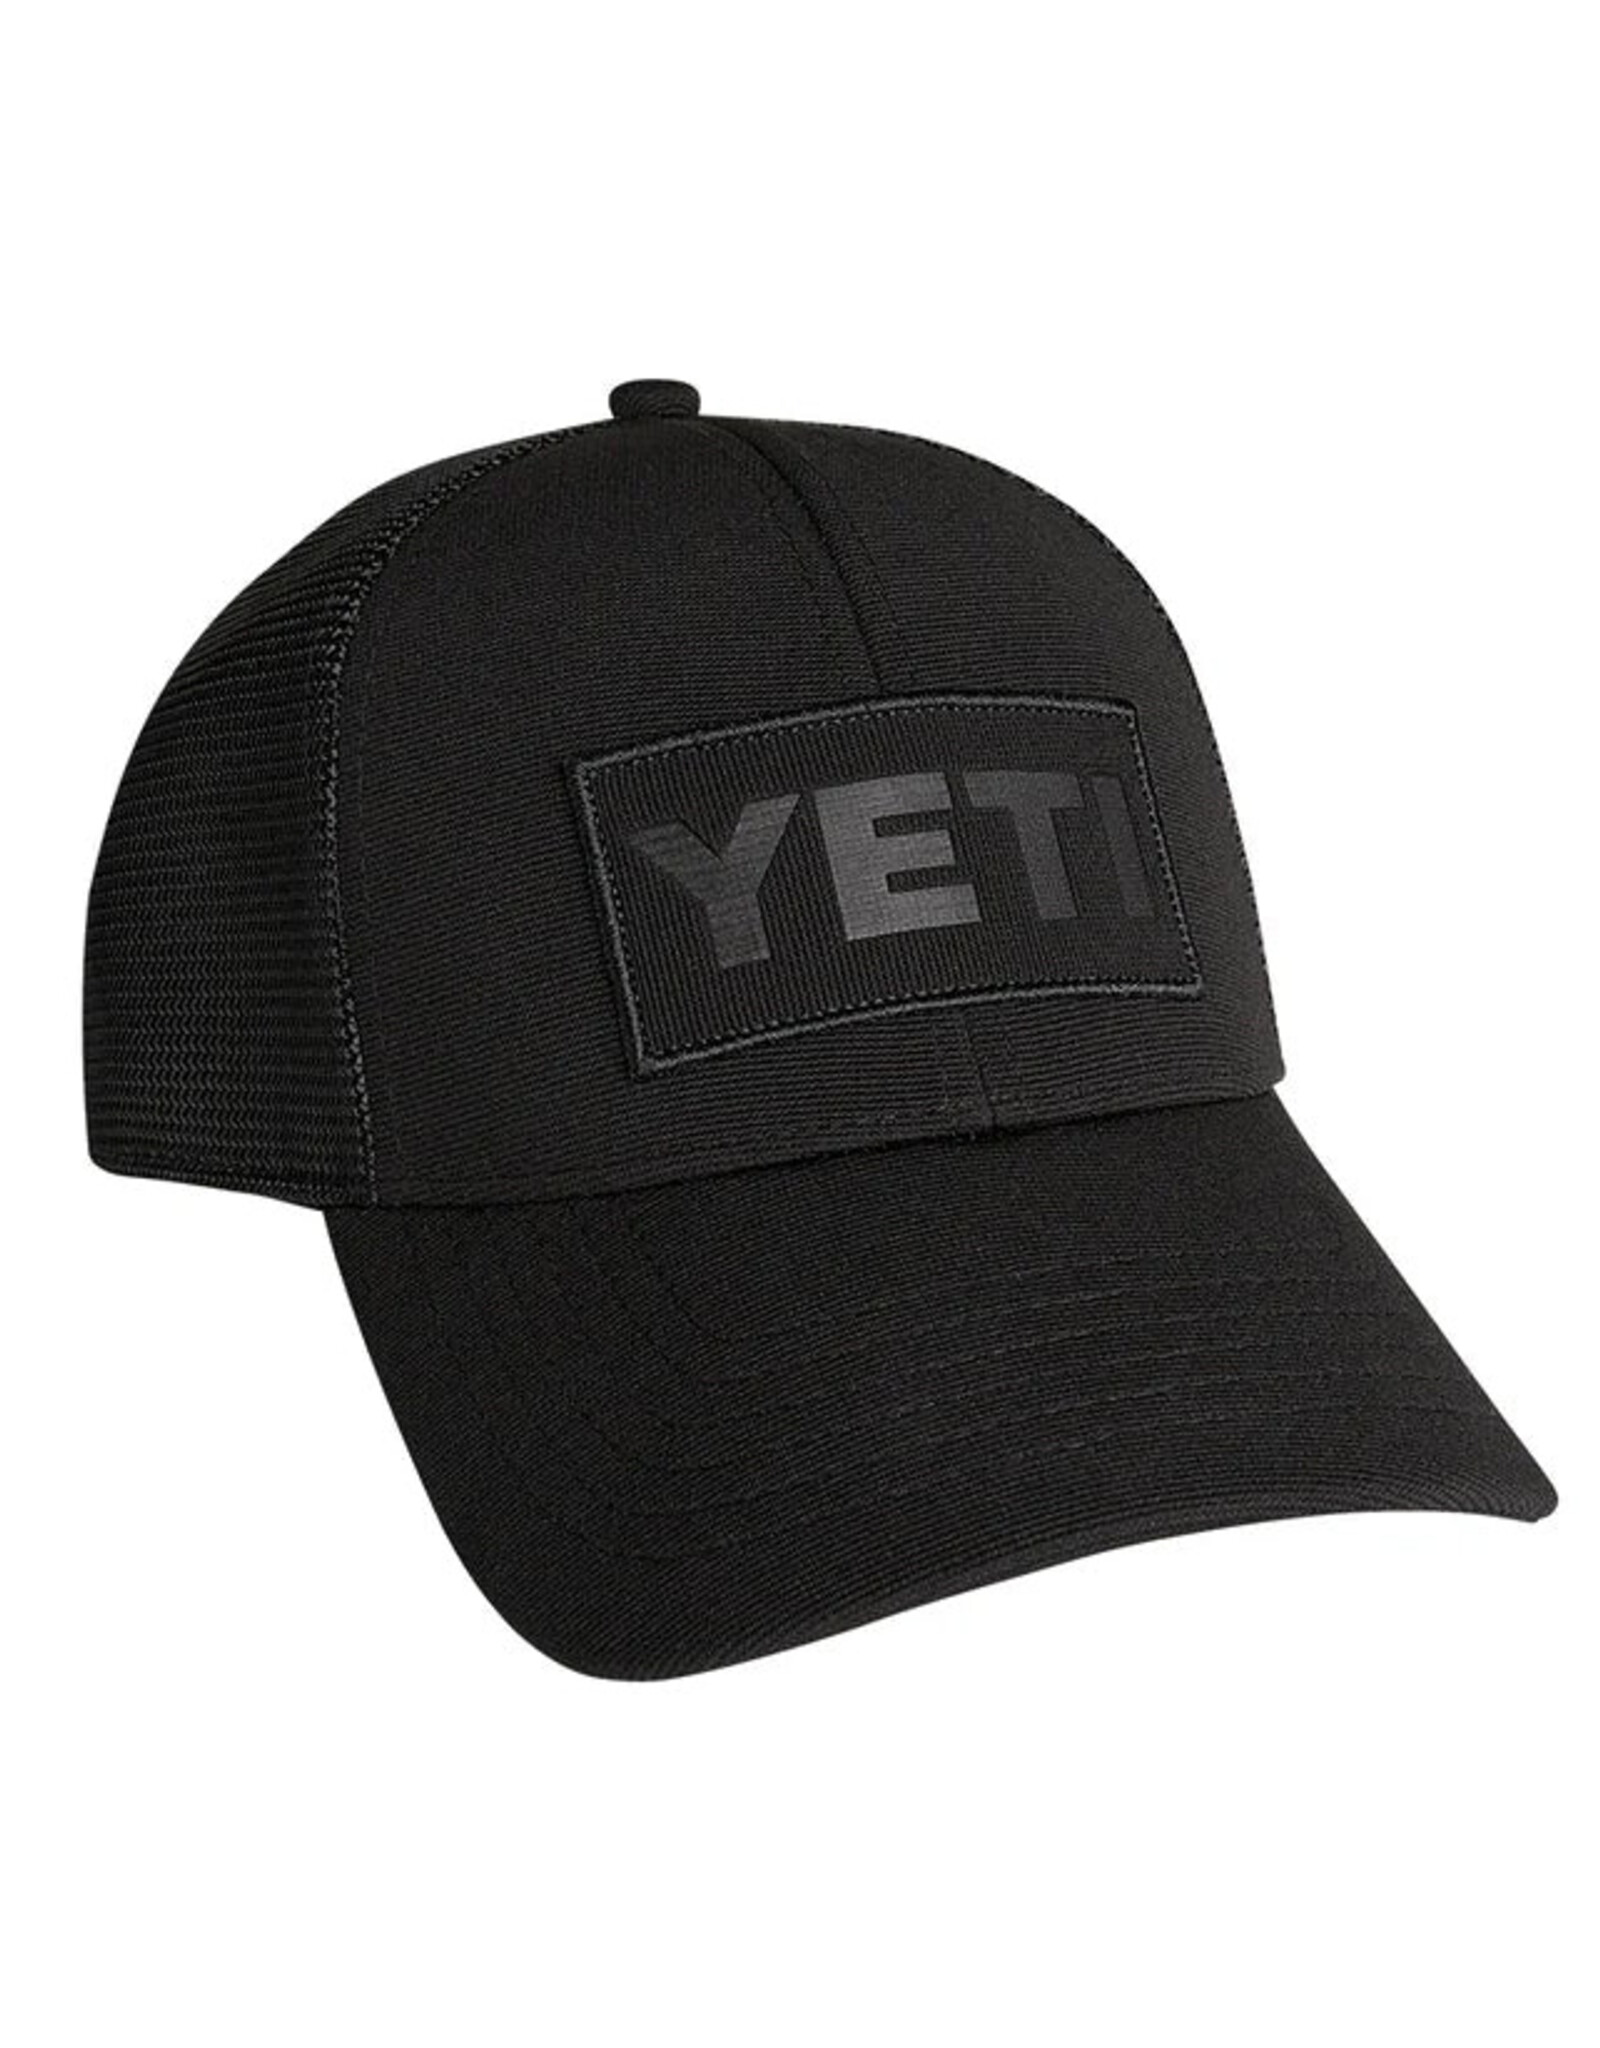 Yeti Yeti Black on Black Patch Trucker Hat - Black